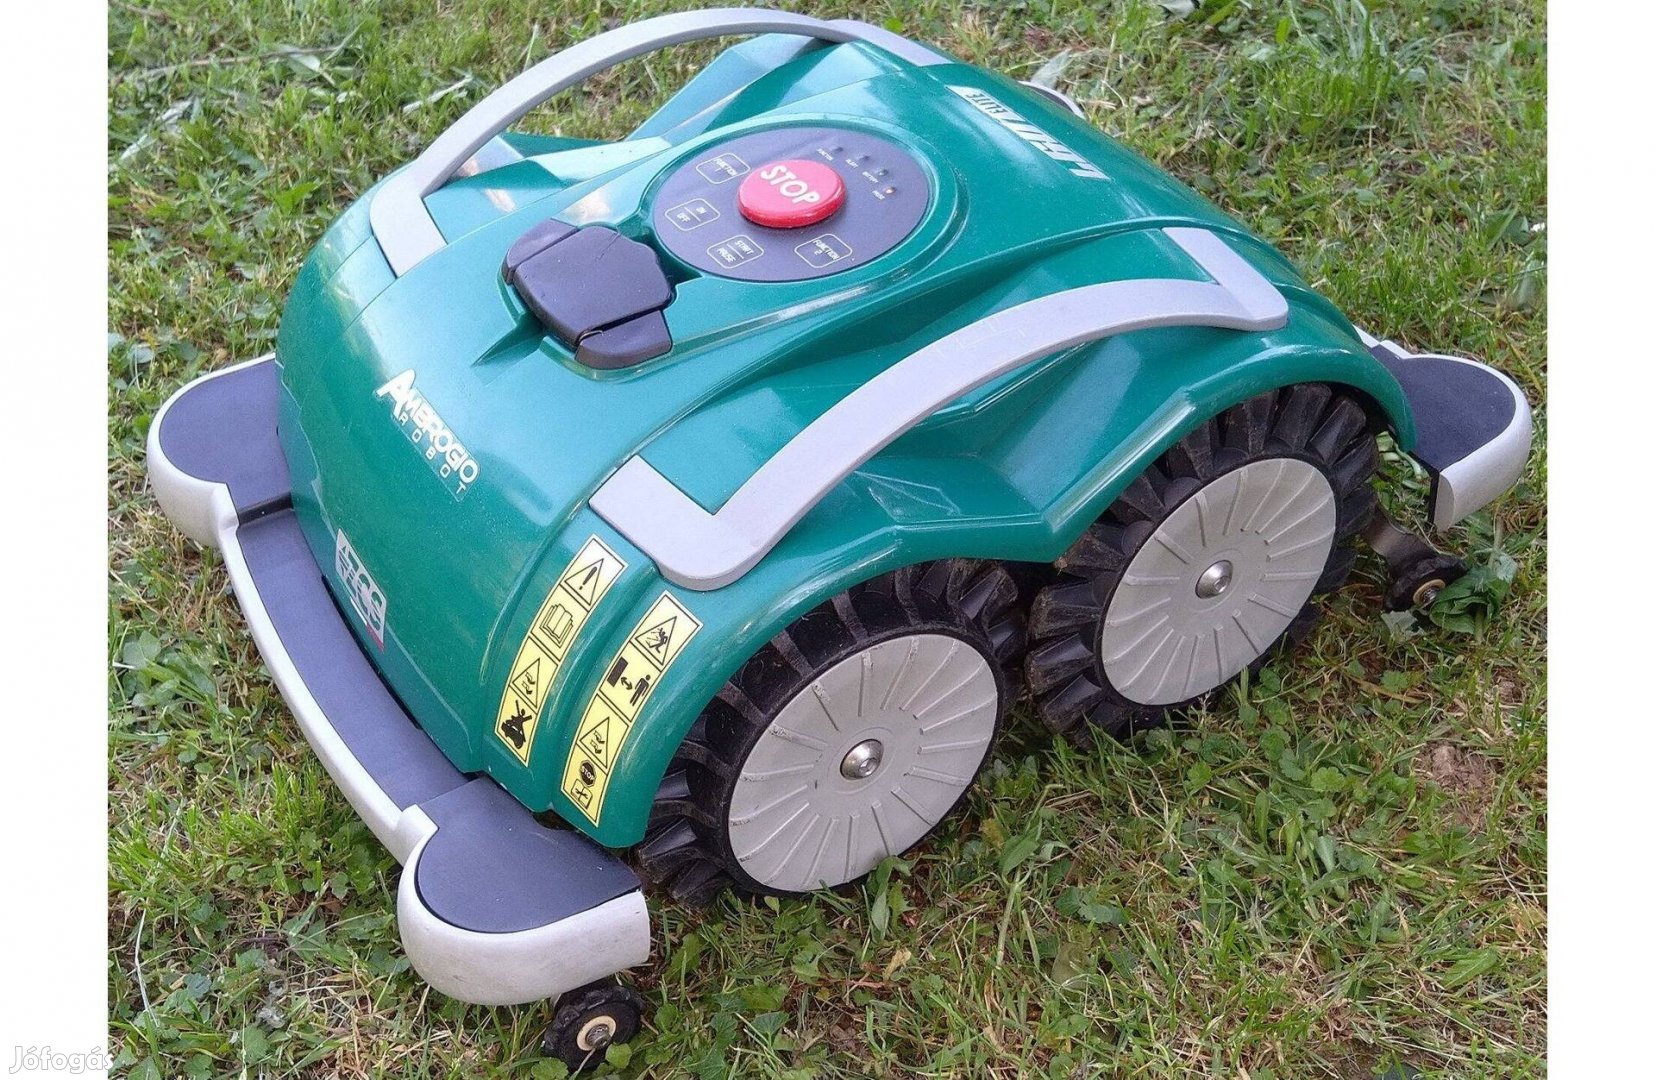 Fűnyíró Robot - Zucchetti Ambrogio L60 Elite fűérzékelős drót nélküli